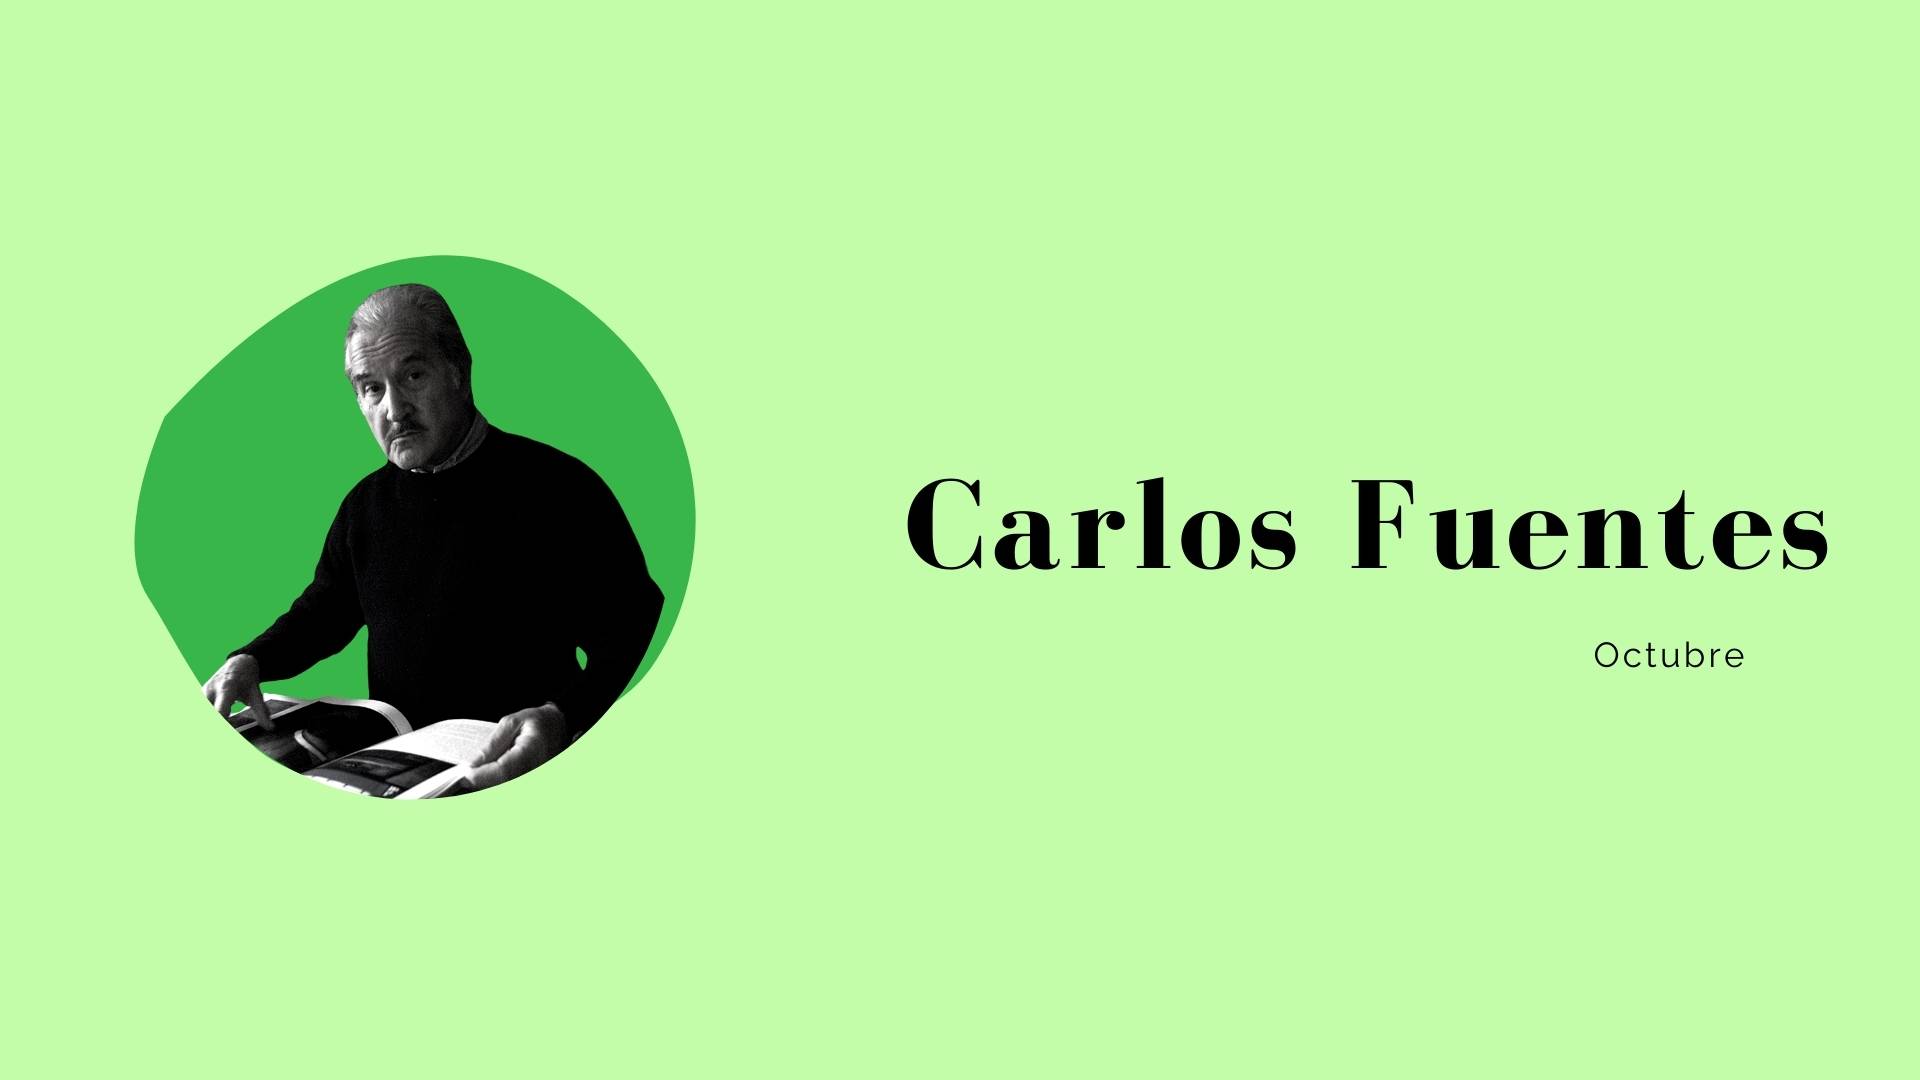 "Carlos Fuentes Octubre"